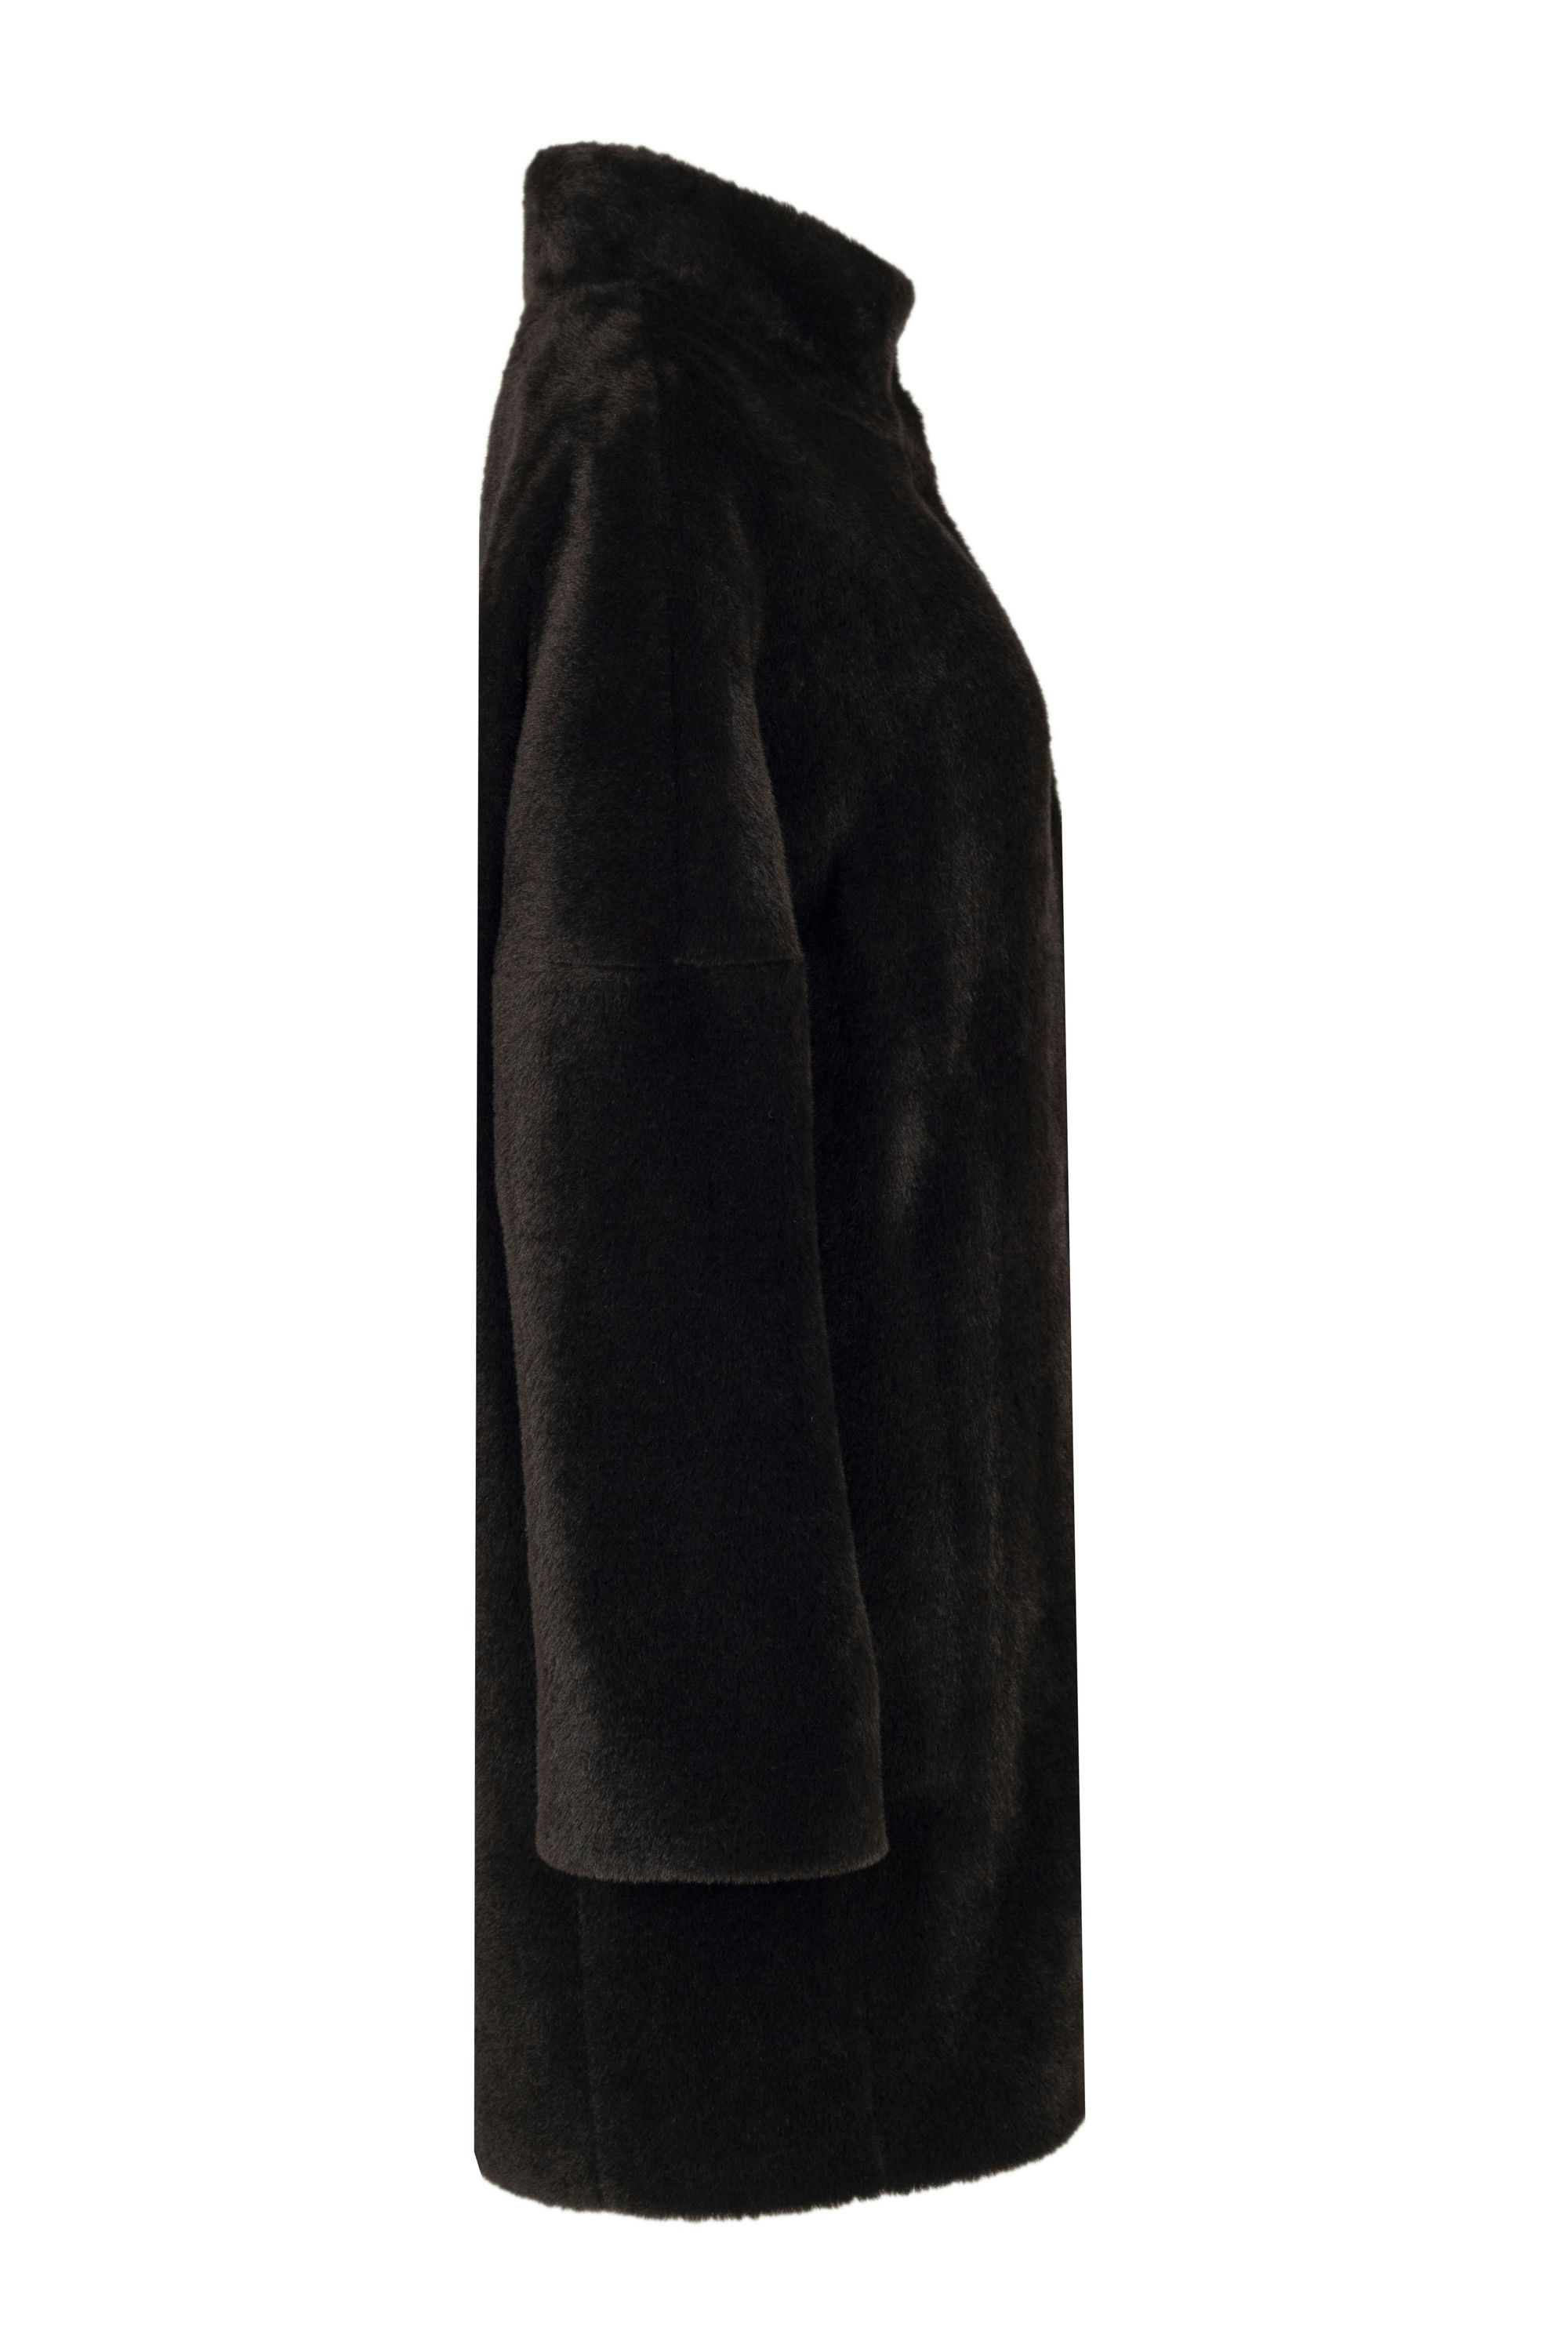 Пальто женское демисезонное 1-530. Фото 2.